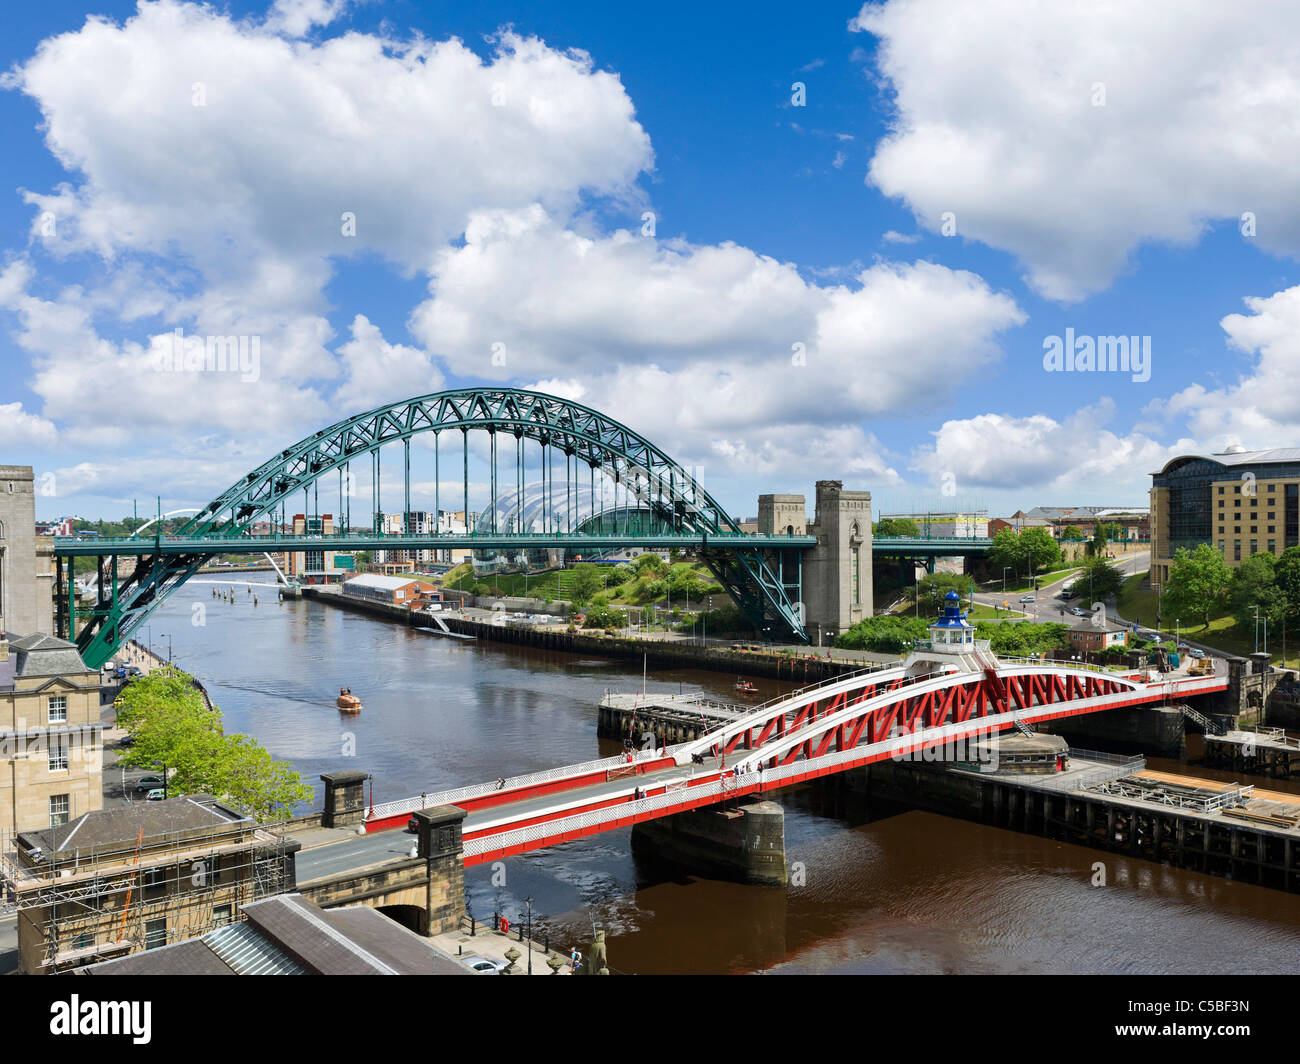 Vue de la rivière Tyne montrant le pont tournant et Tyne Bridge avec le Sage Gateshead derrière, Newcastle upon Tyne, Royaume-Uni Banque D'Images